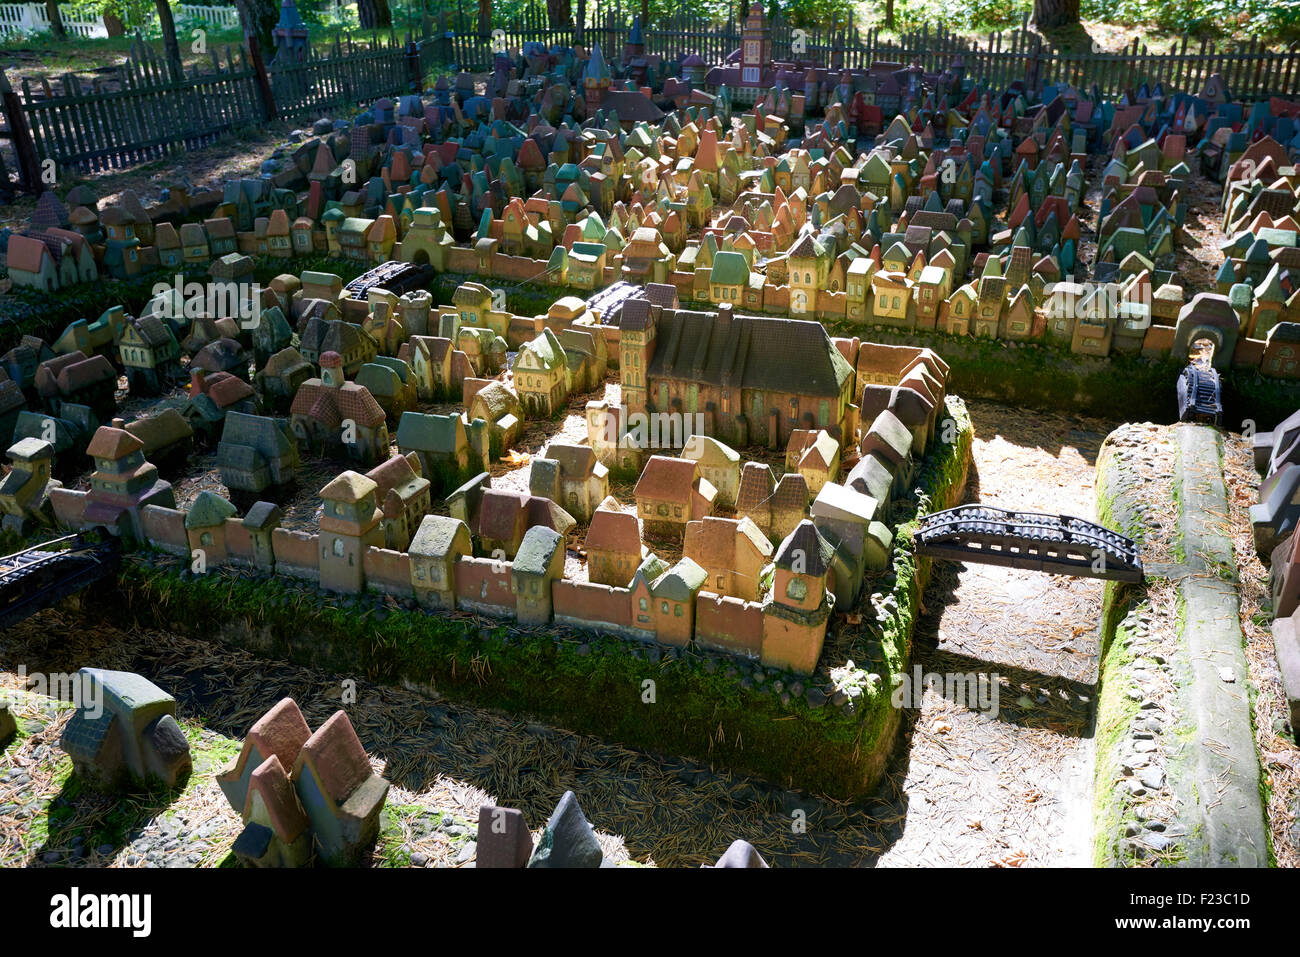 SVETLOGORSK, RUSSIA - Sep 10, 2015: città in miniatura - il layout medievale di Koenigsberg prima metà del XVI secolo da m Foto Stock